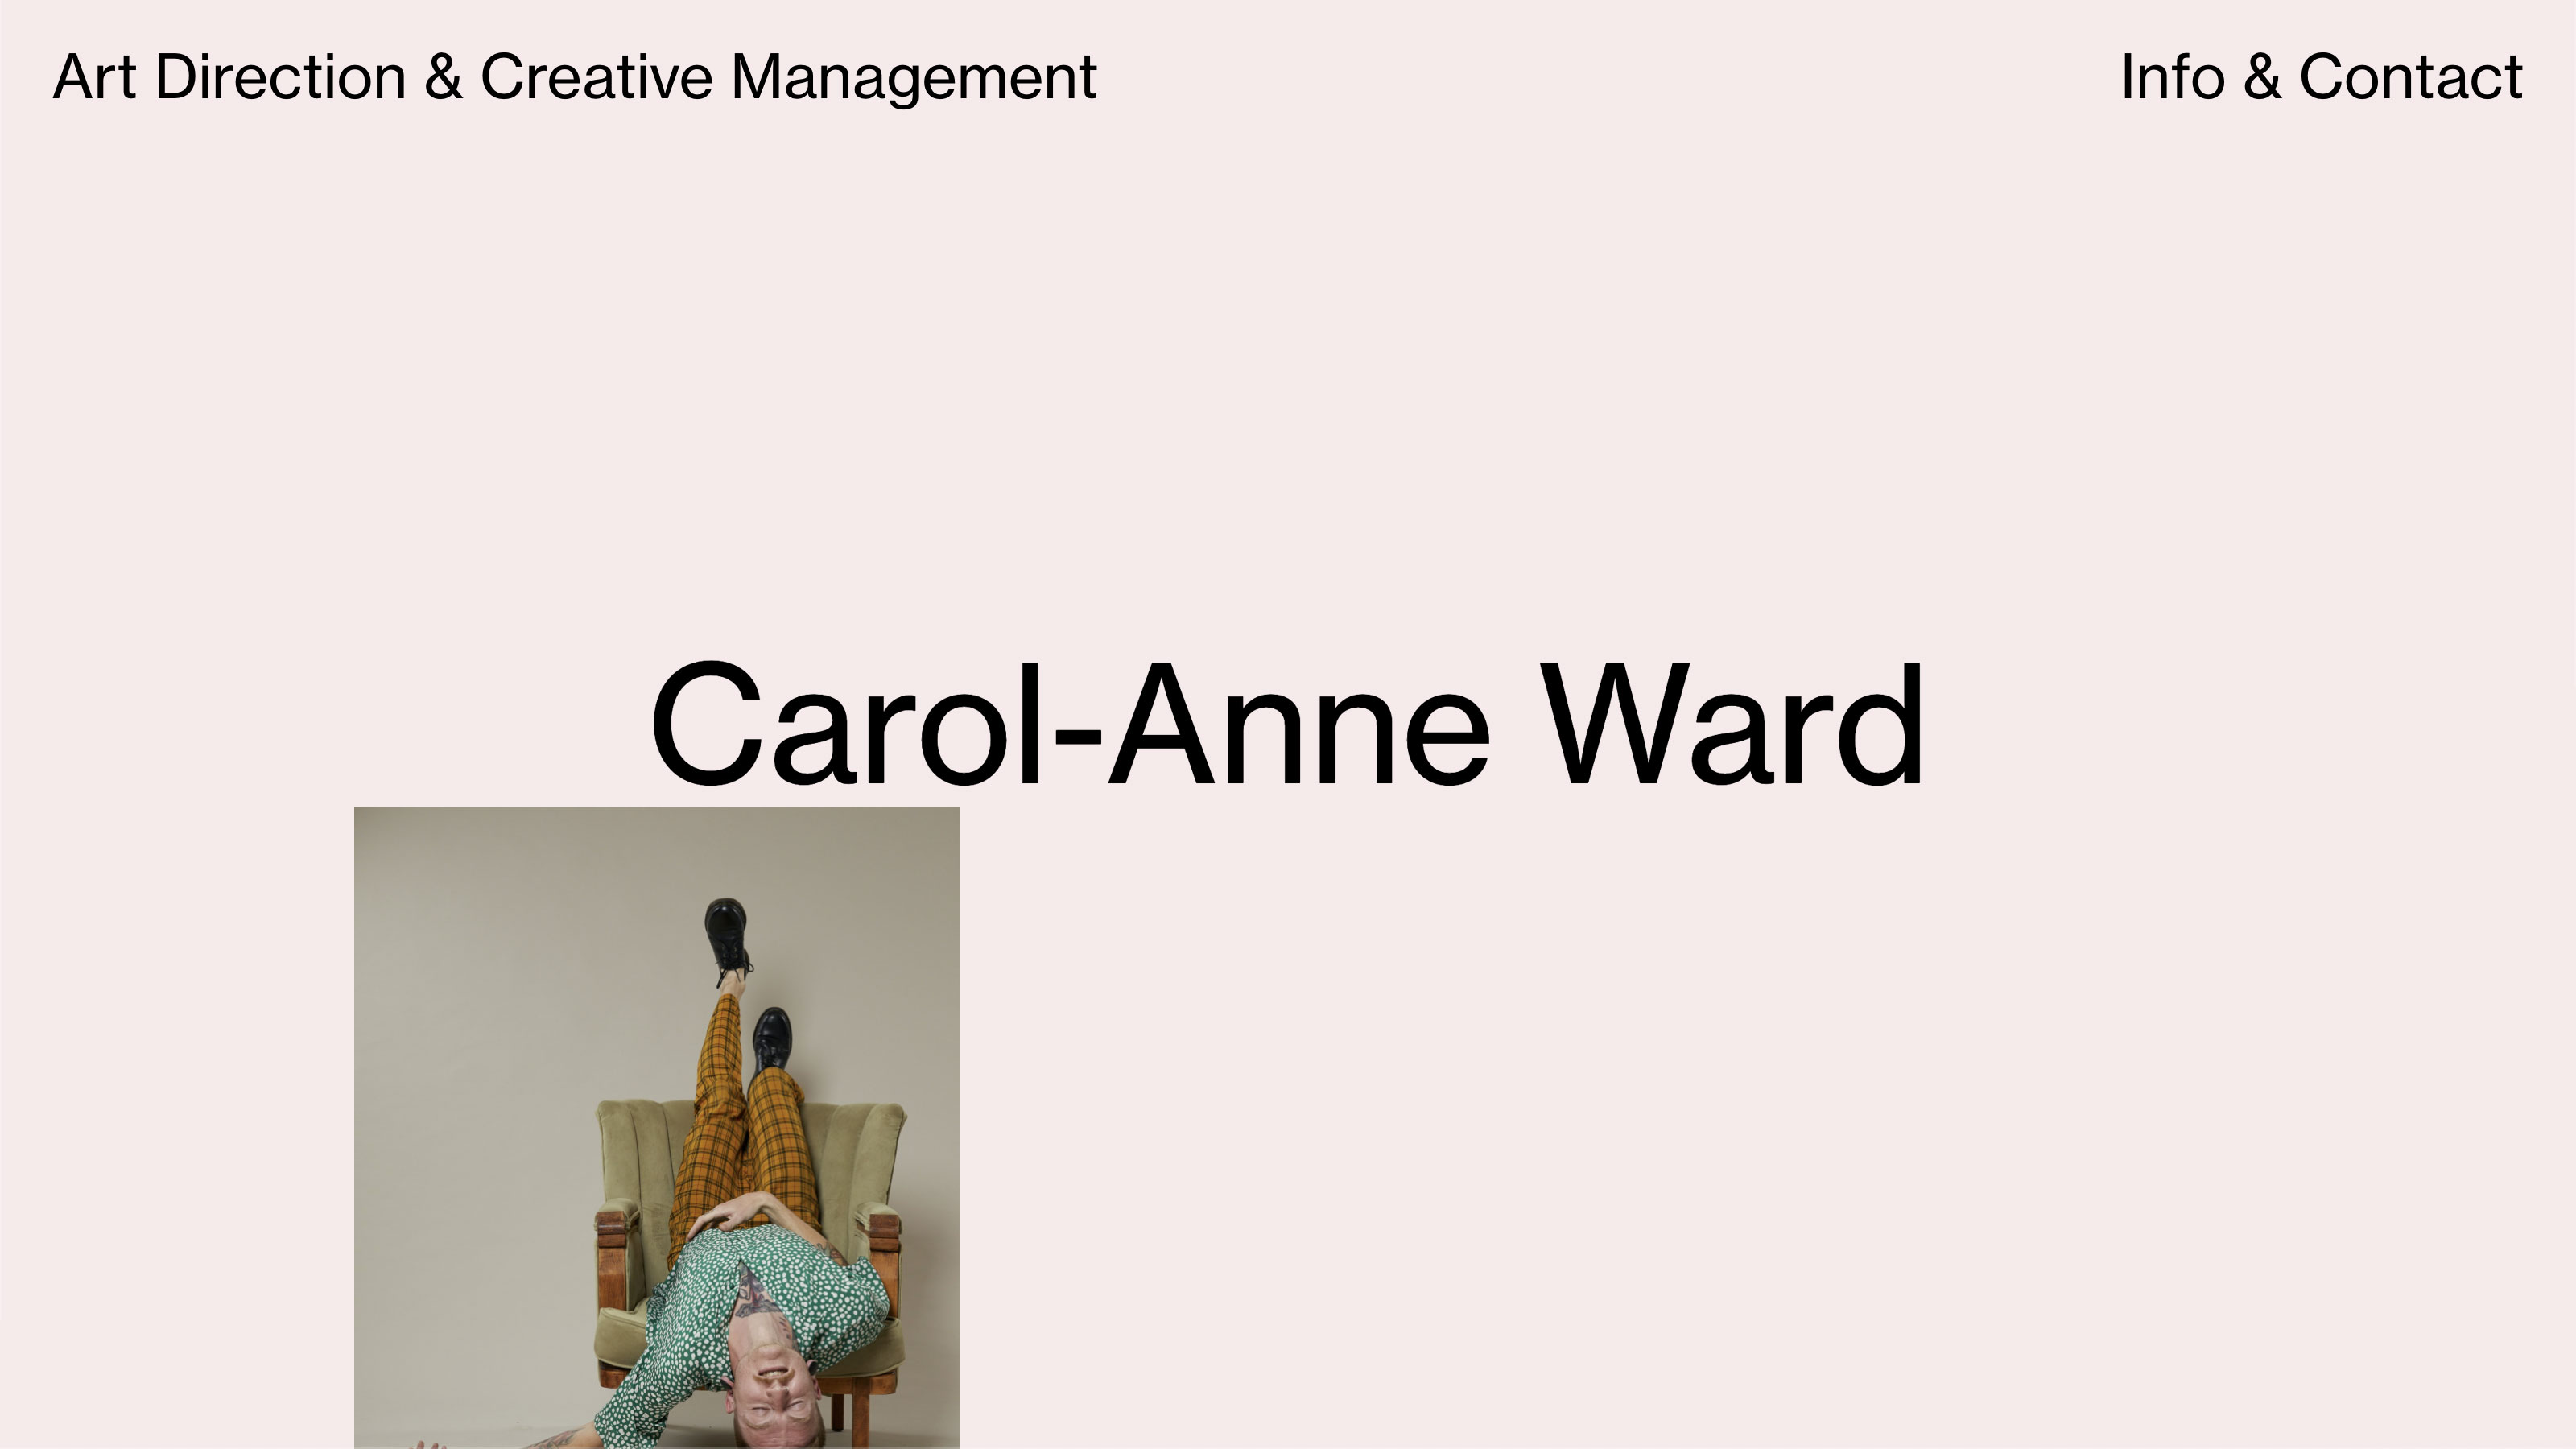 Carol-Anne Ward